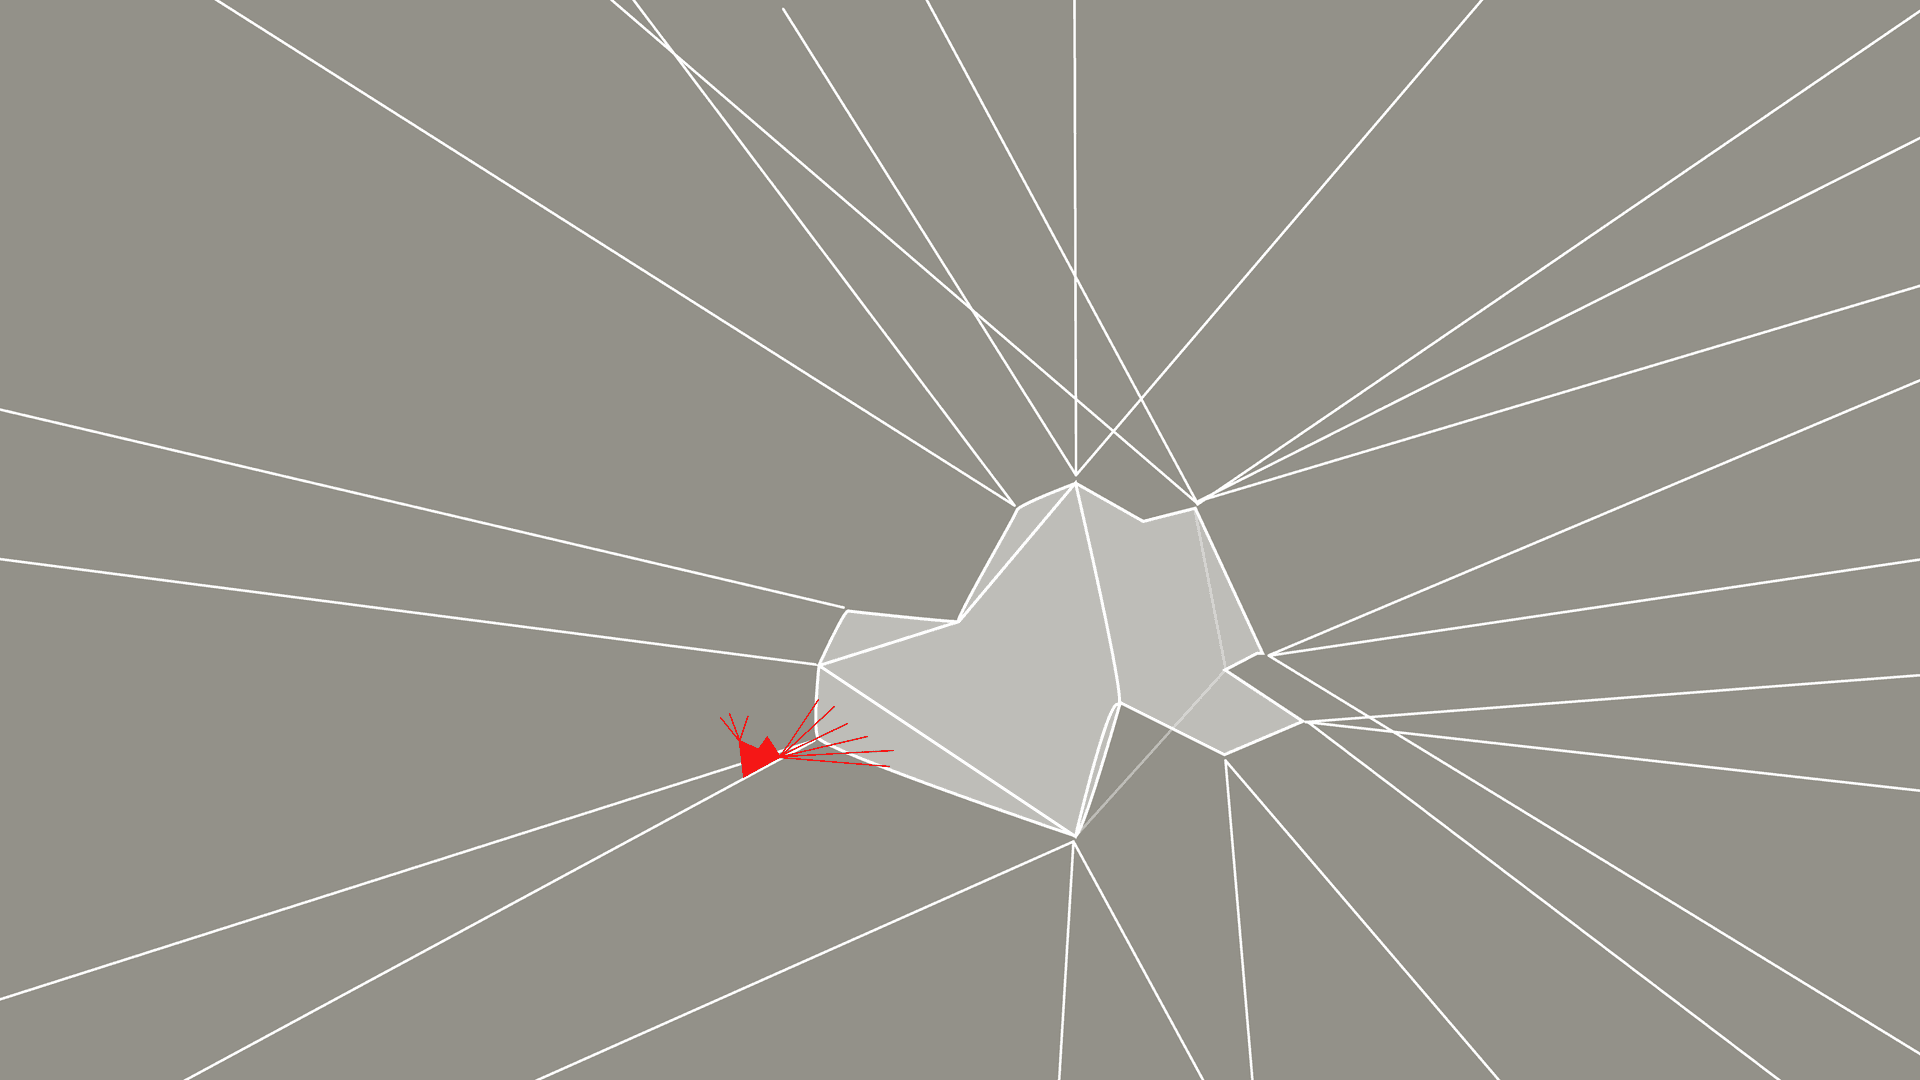 In der Mitte des Bildes befindet sich eine geometrische Fläche mit weißer Kontur, hellgrauer Füllung und einer weiteren kleinen, roten Form links daneben. Die Kanten der Form werden zum Bildrand durch weiße Linien verlängert. Der Hintergrund ist grau.